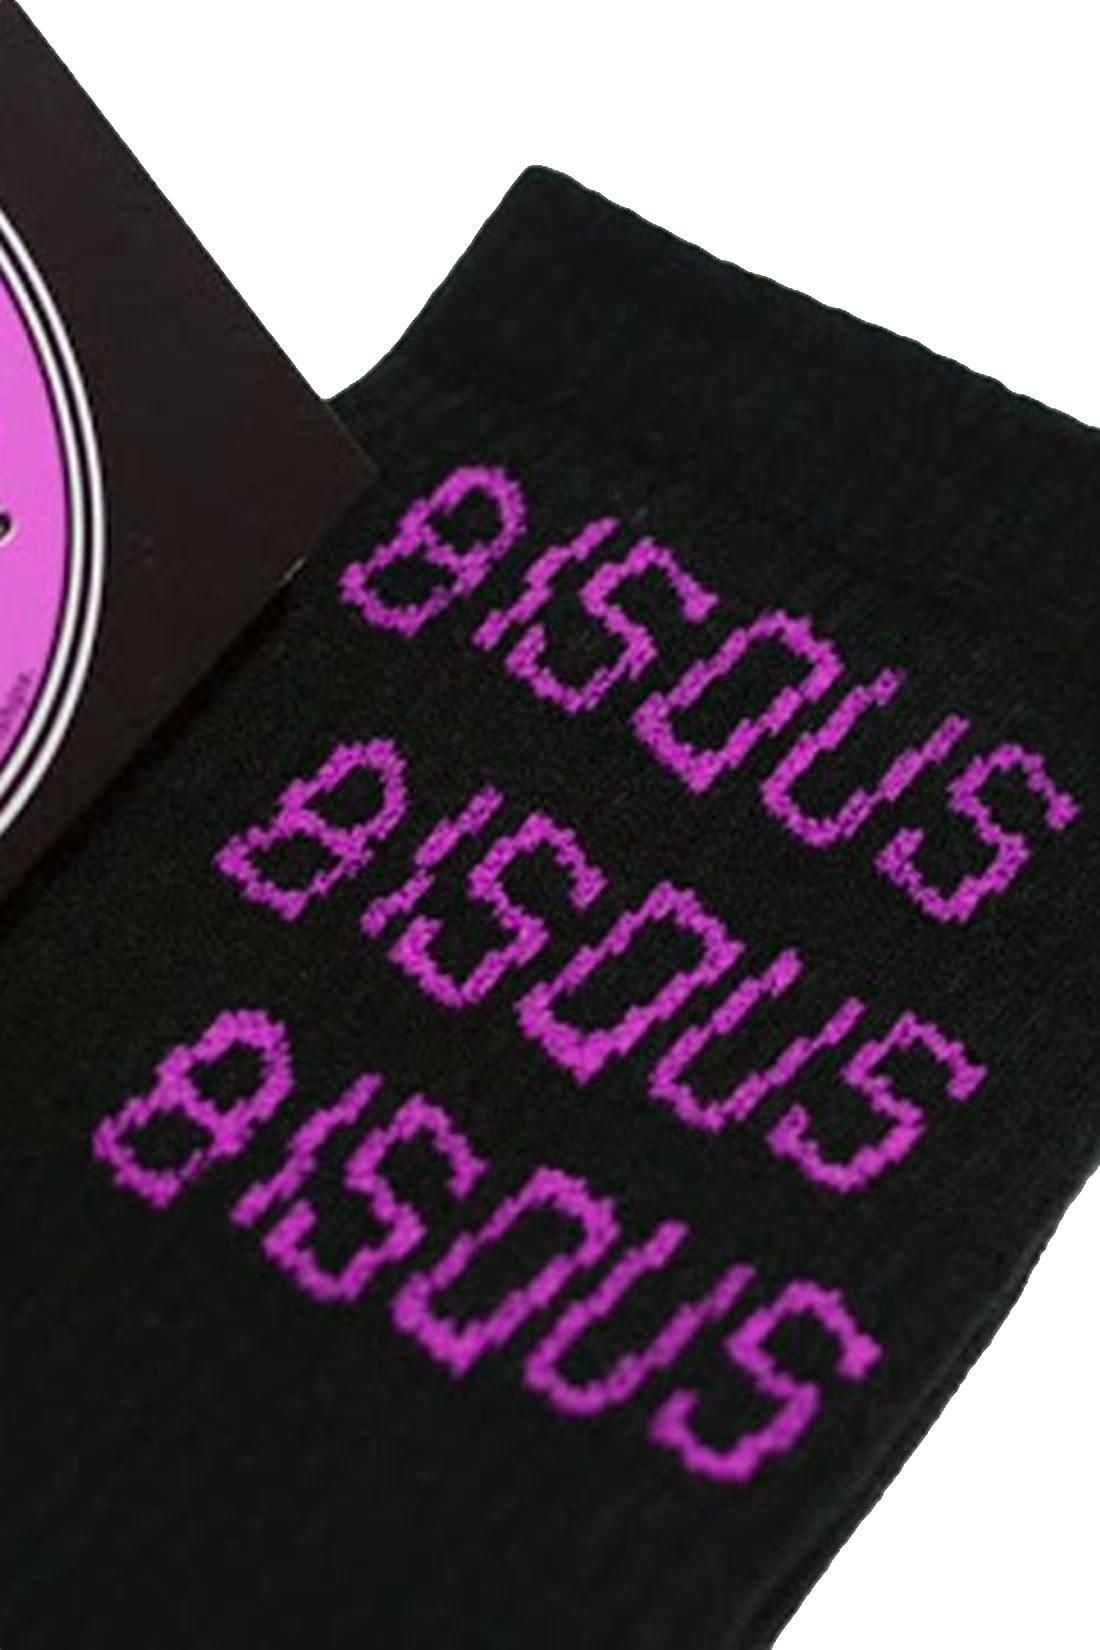 BISOUS SKATEBOARDS / Socks bisous x3 Black / pink